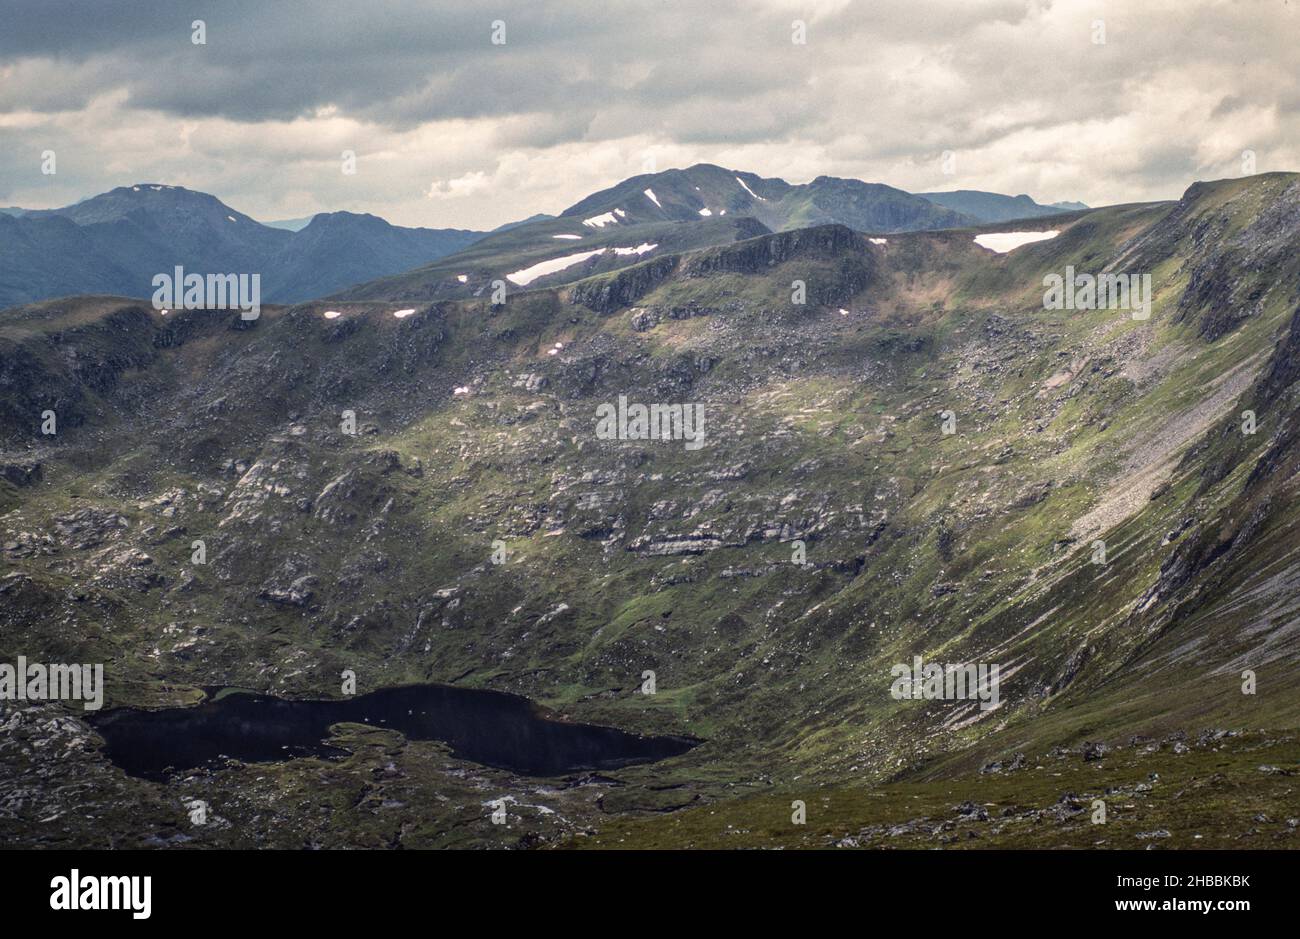 Archivbild, 1990: Schottische Highlands Landschaft mit Bergen lochan. Gescannt aus 35mm-Transparentfolien Stockfoto